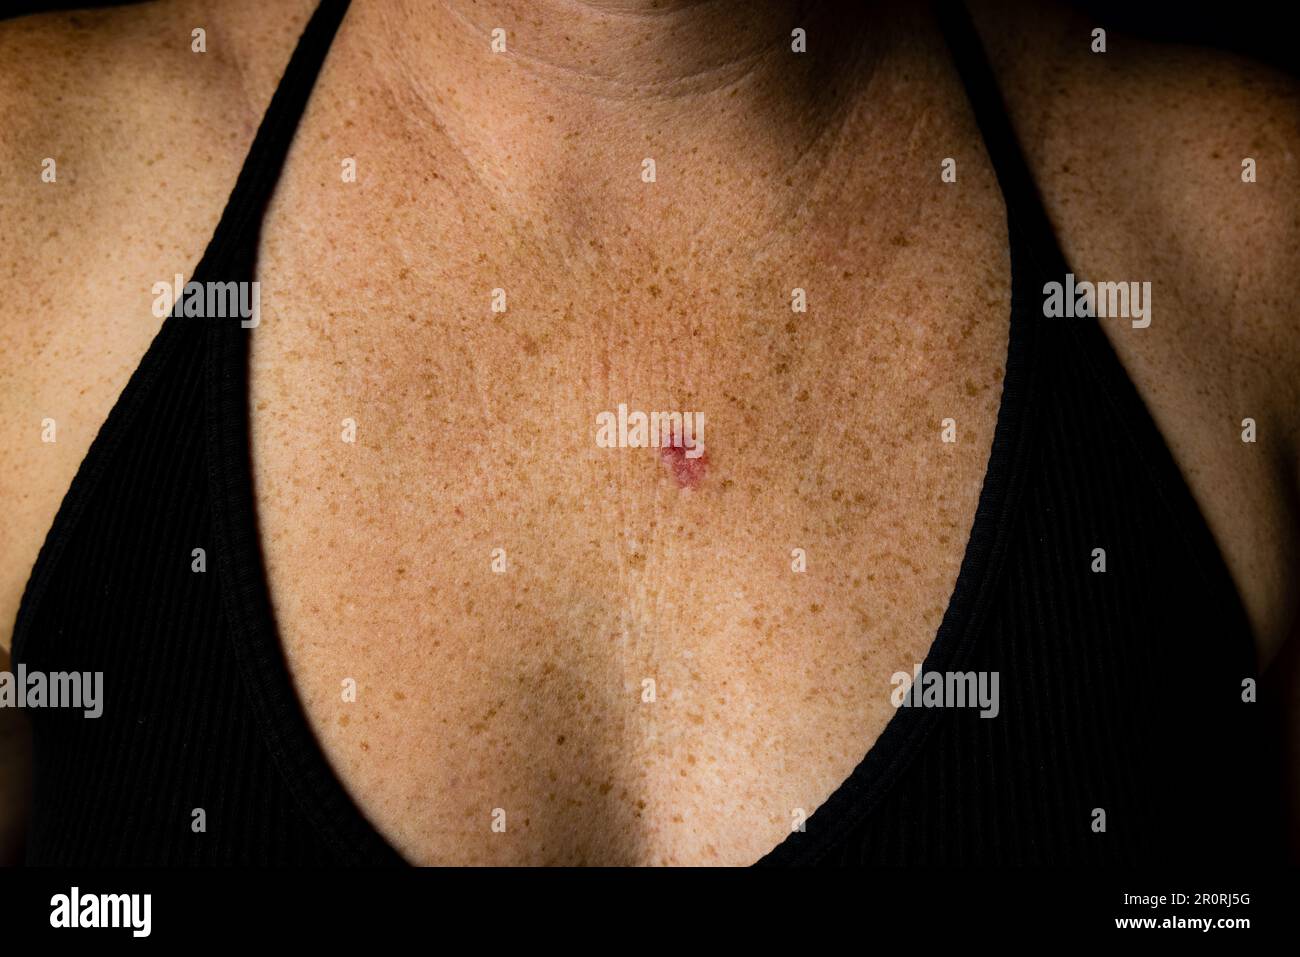 Horizontalansicht des Basalzellkarzinoms auf der jungen 30s-kaukasischen weiblichen Brust. Stockfoto